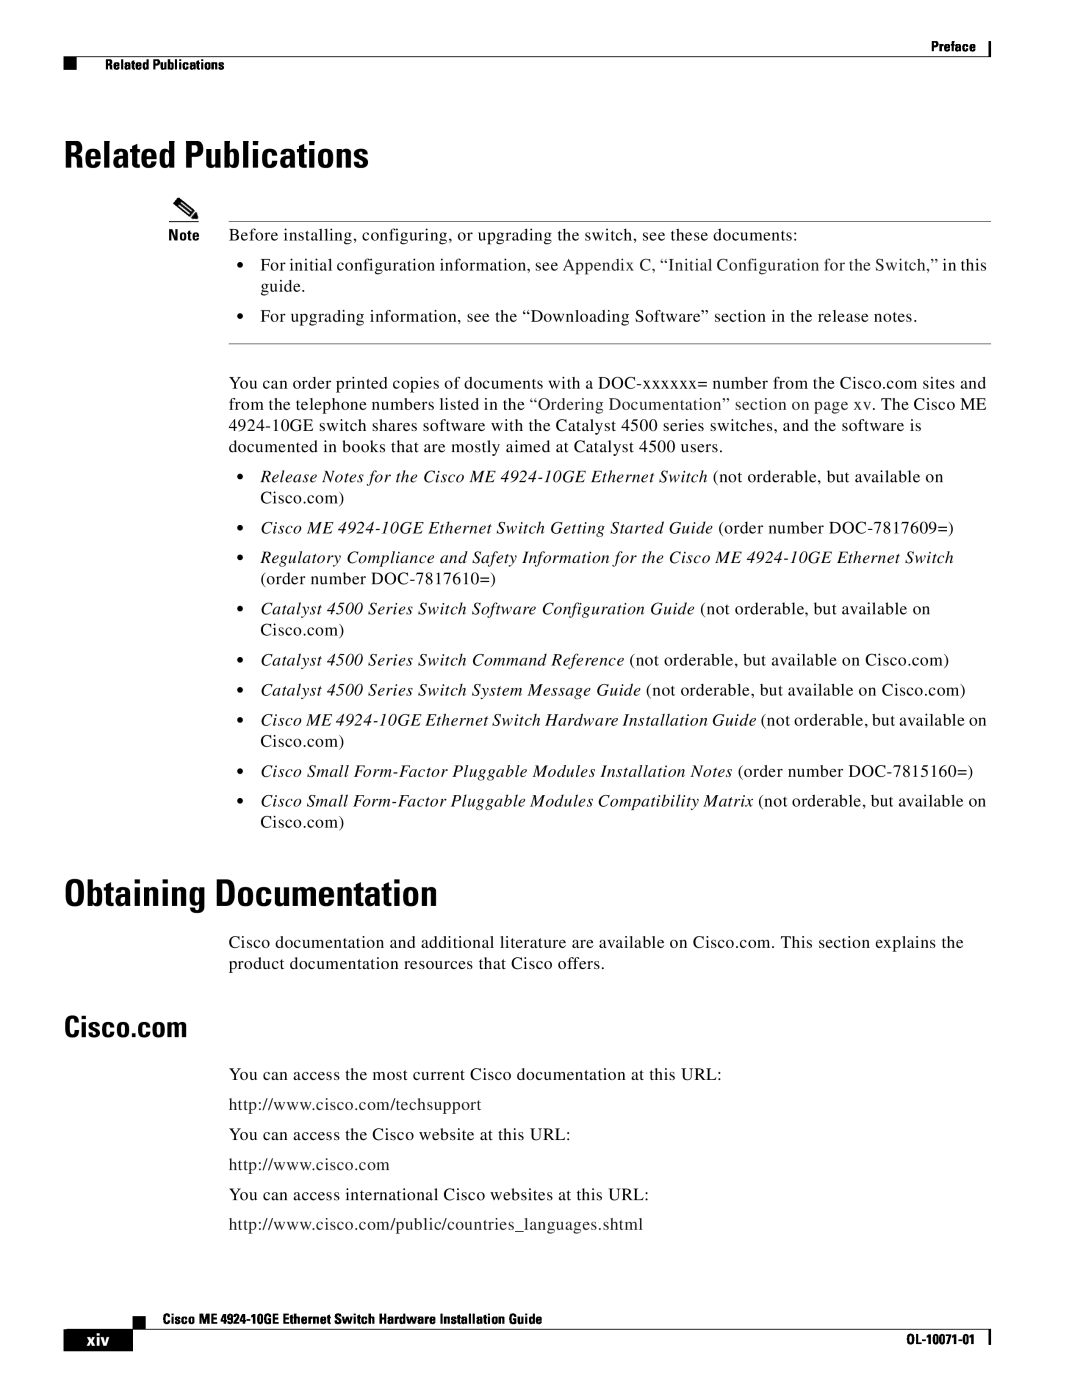 Cisco Systems ME 4924-10GE manual Related Publications, Obtaining Documentation, Cisco.com 